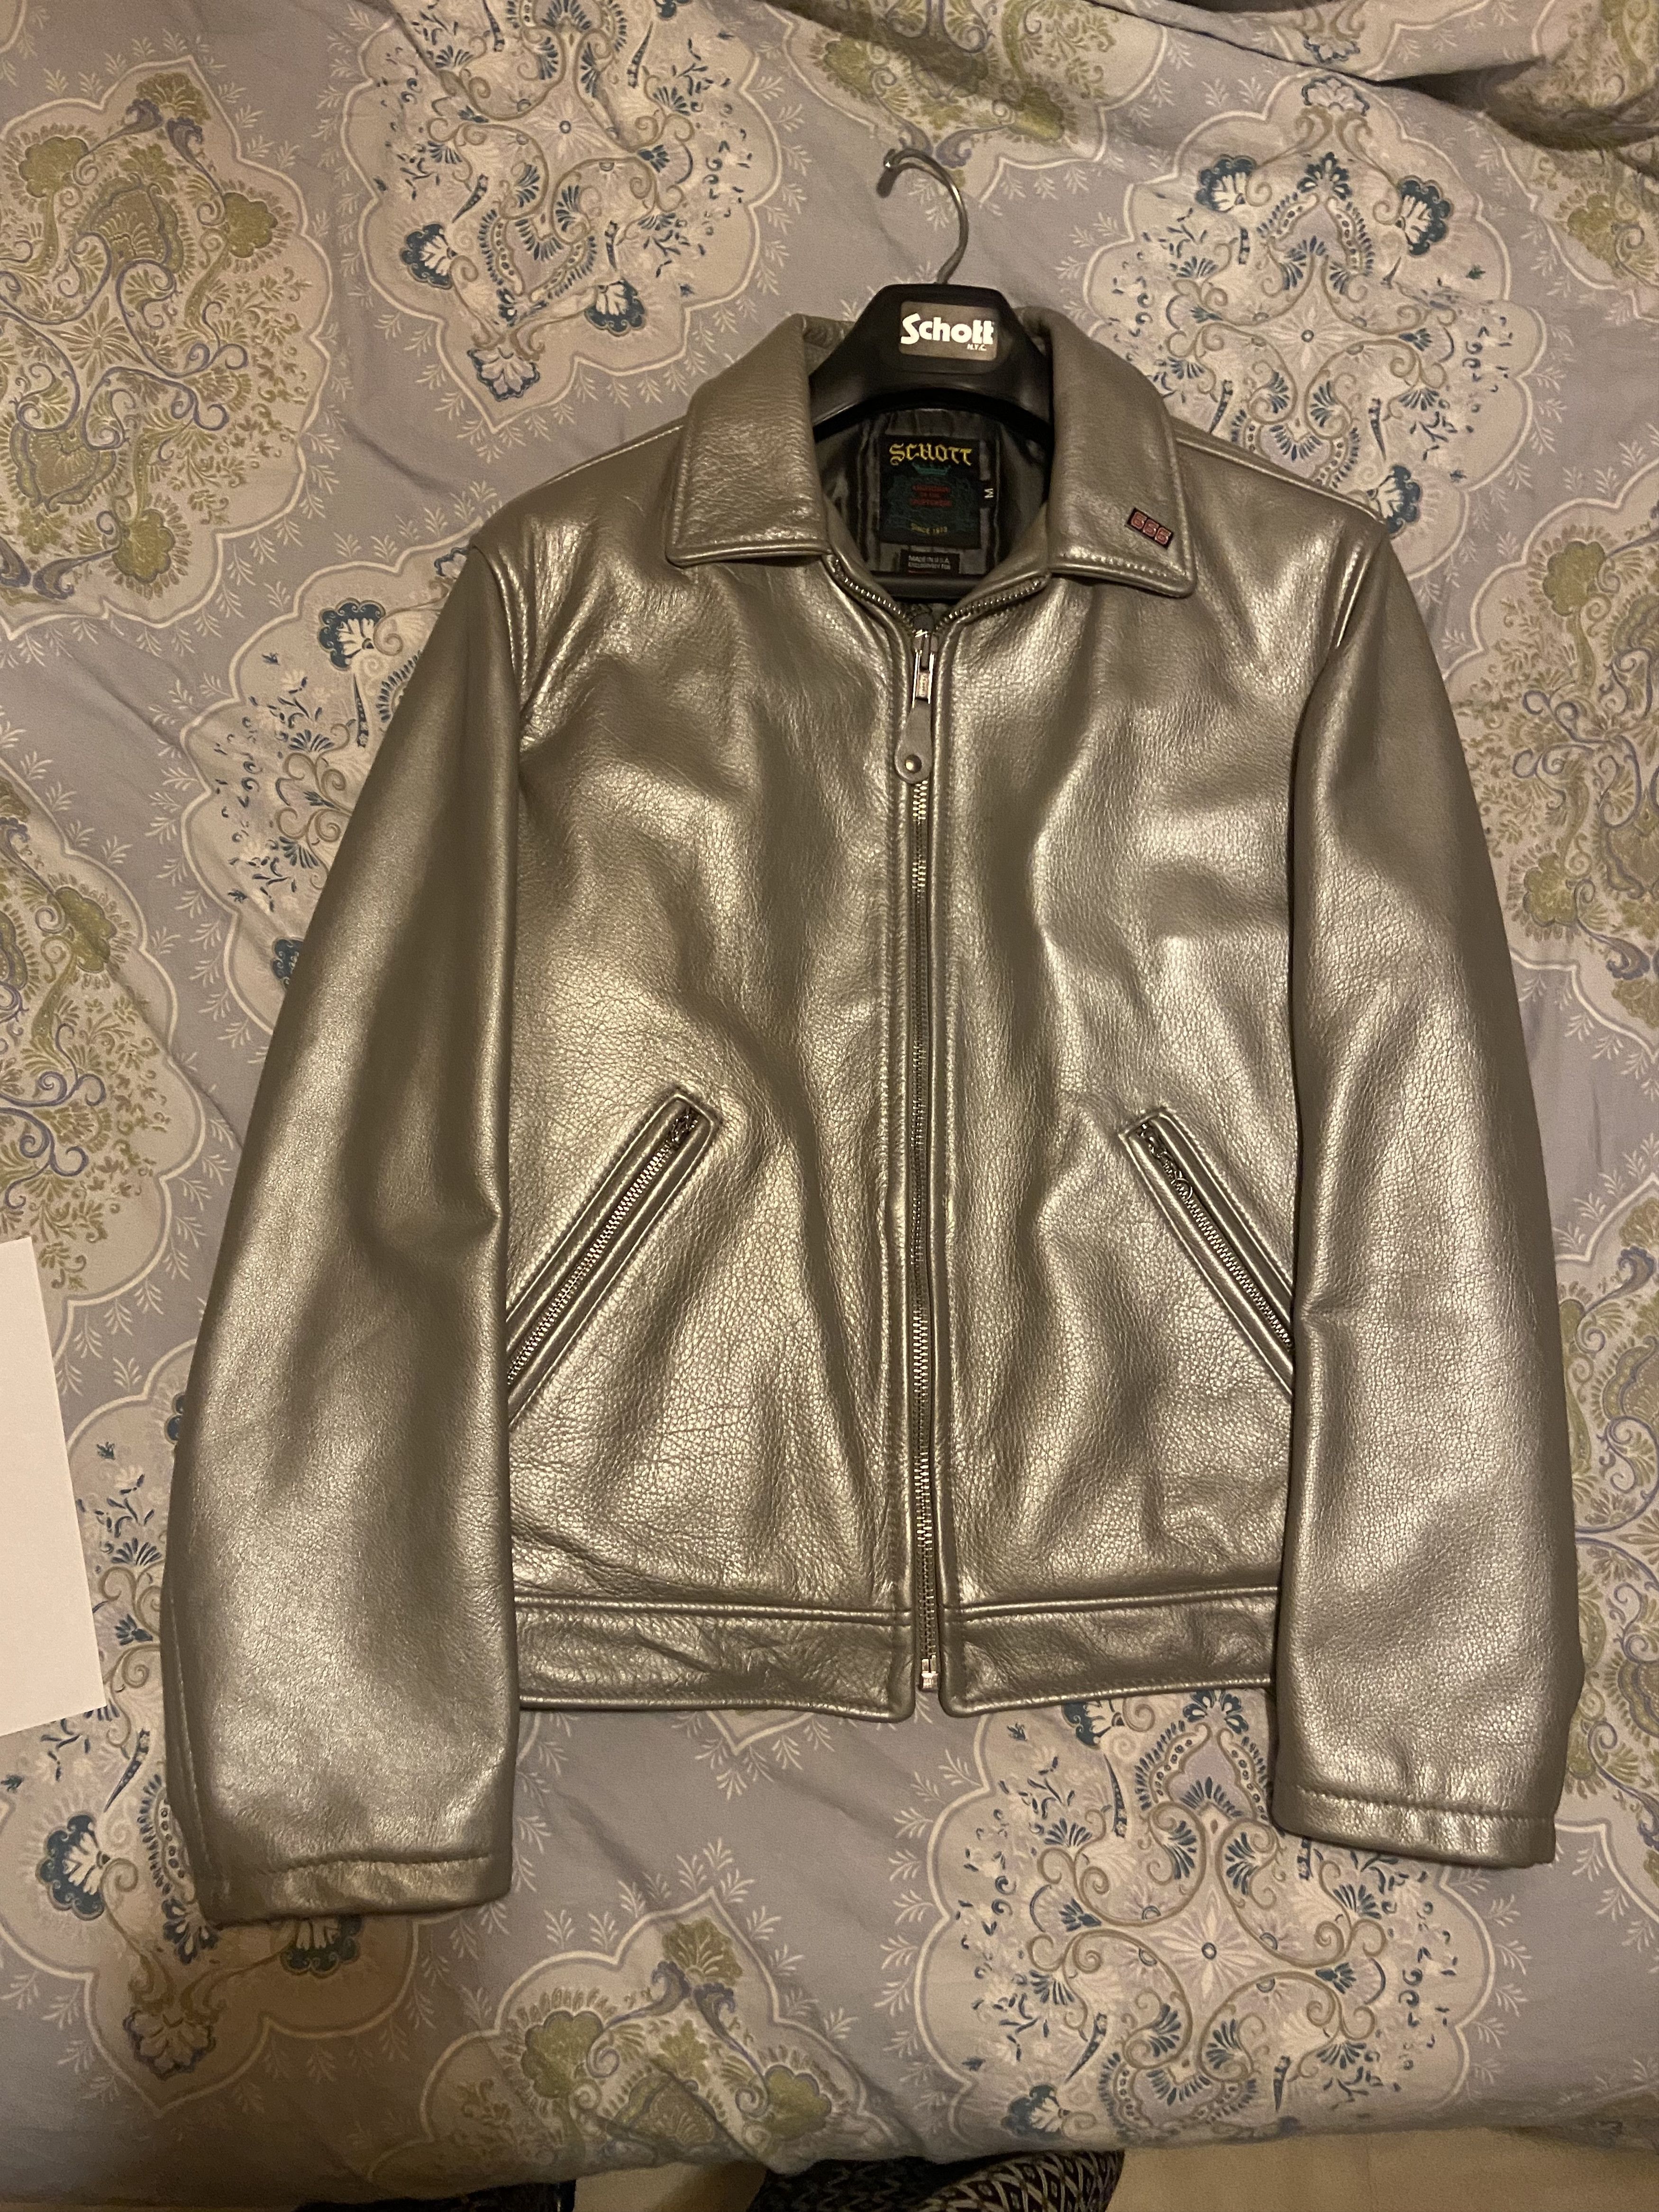 Supreme Supreme Schott Leather Work Jacket Silver Medium | Grailed